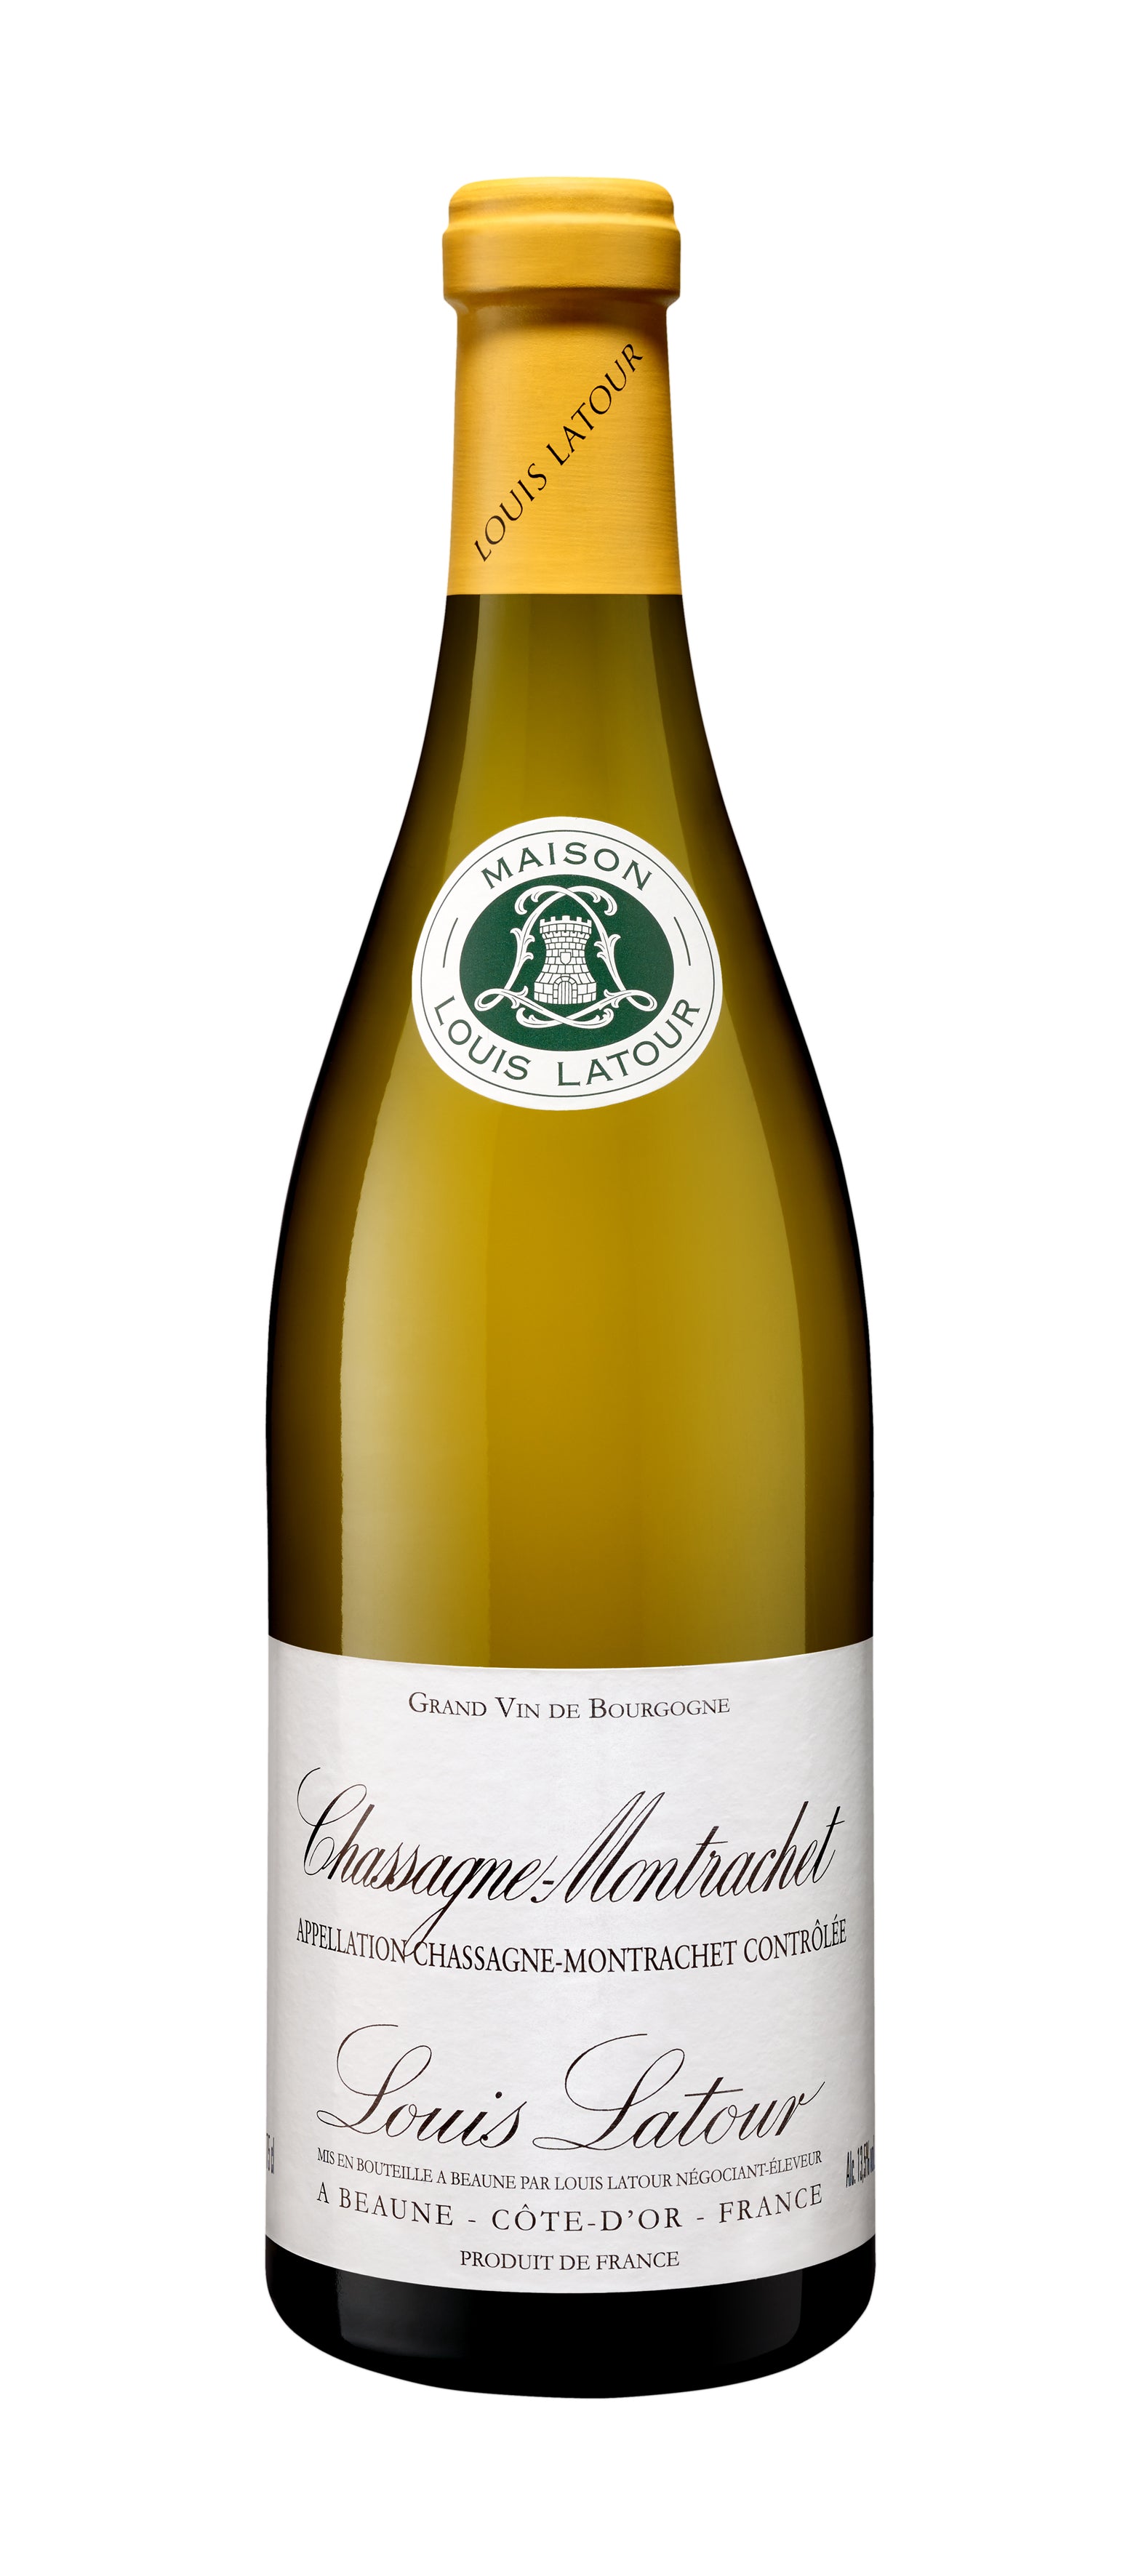 Wine Vins Louis Latour Chassagne-Montrachet Branco